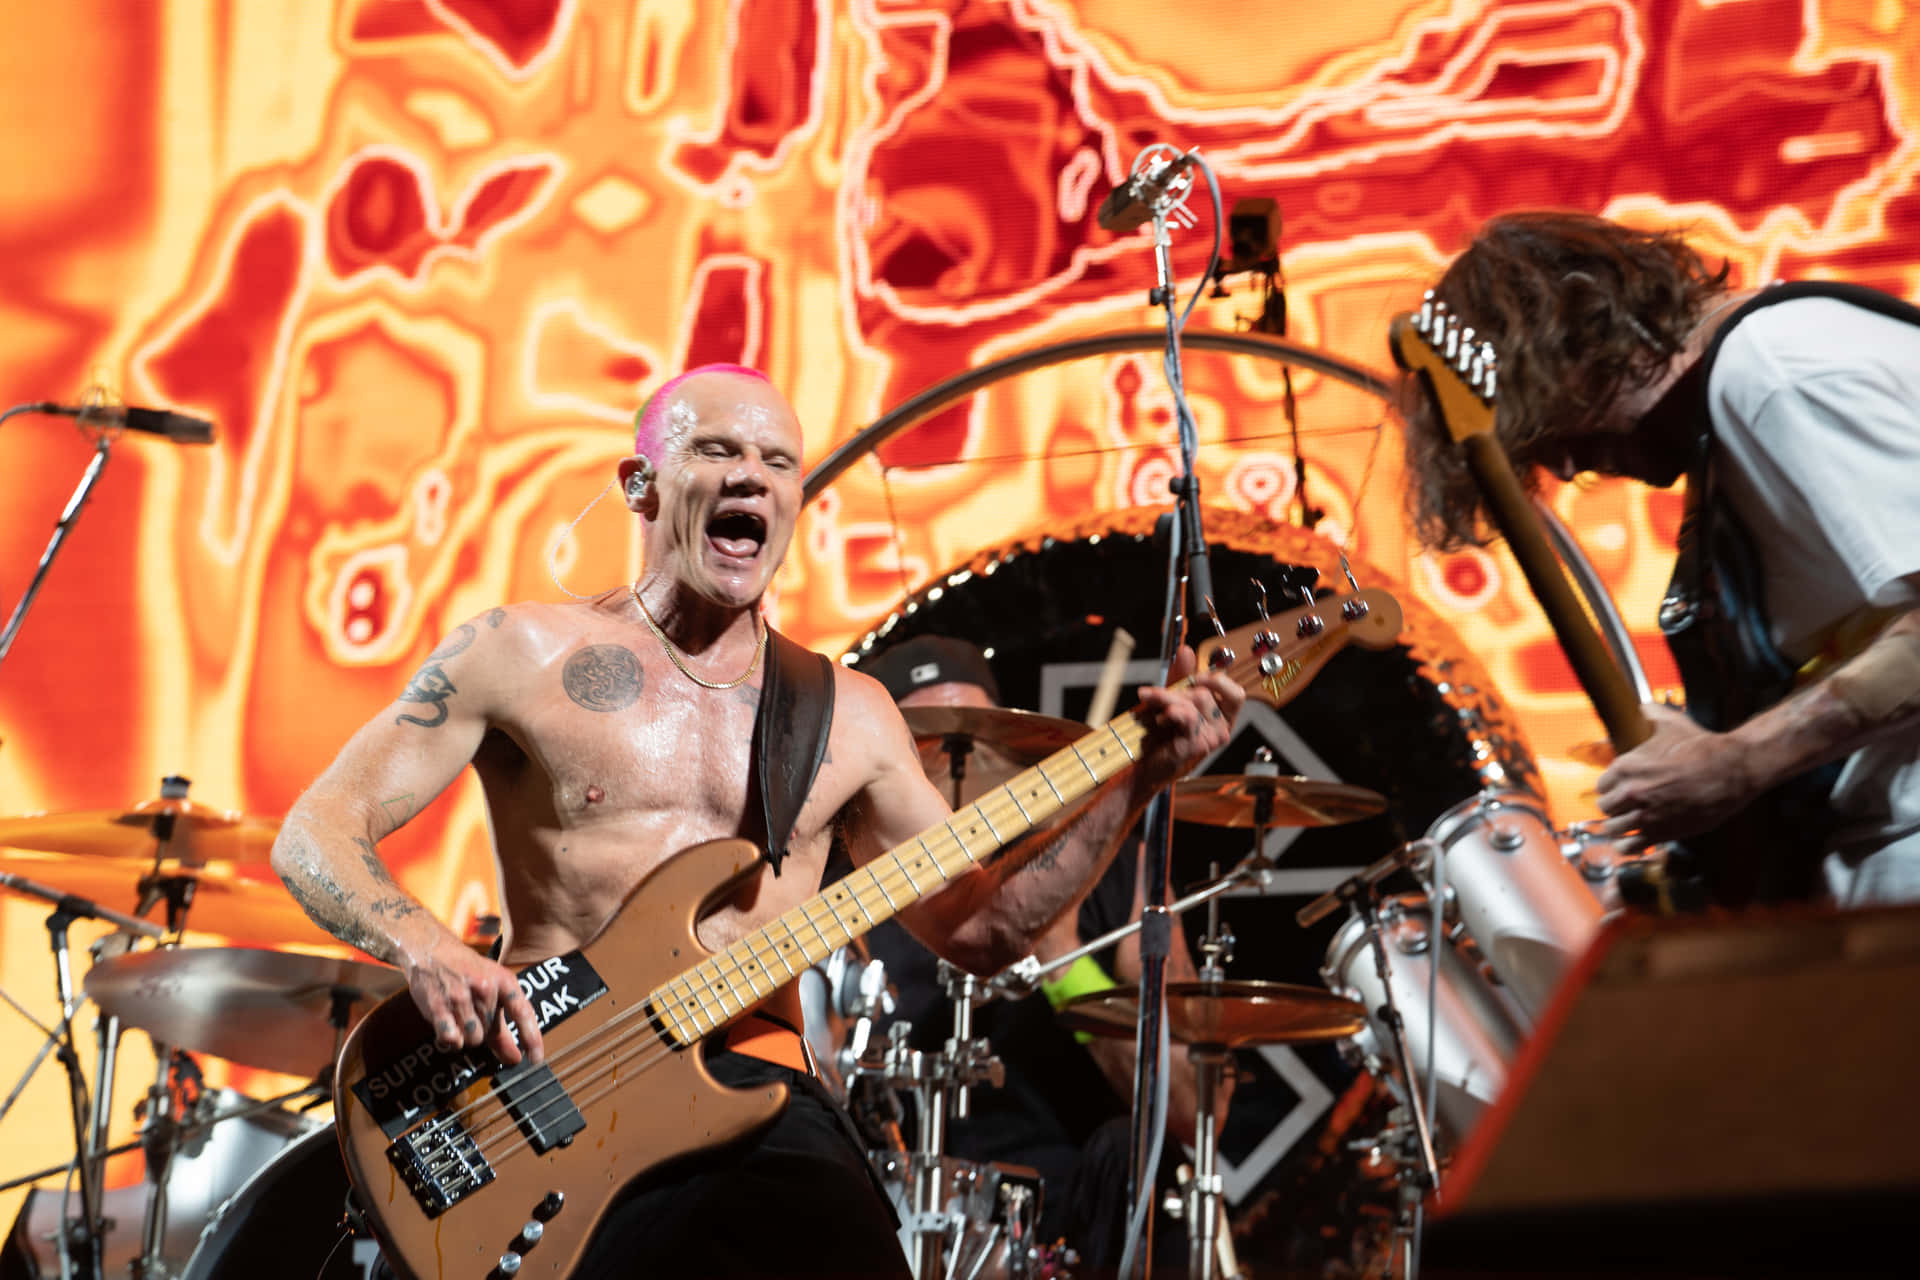 Diered Hot Chili Peppers Treten Auf Der Bühne Auf. Wallpaper